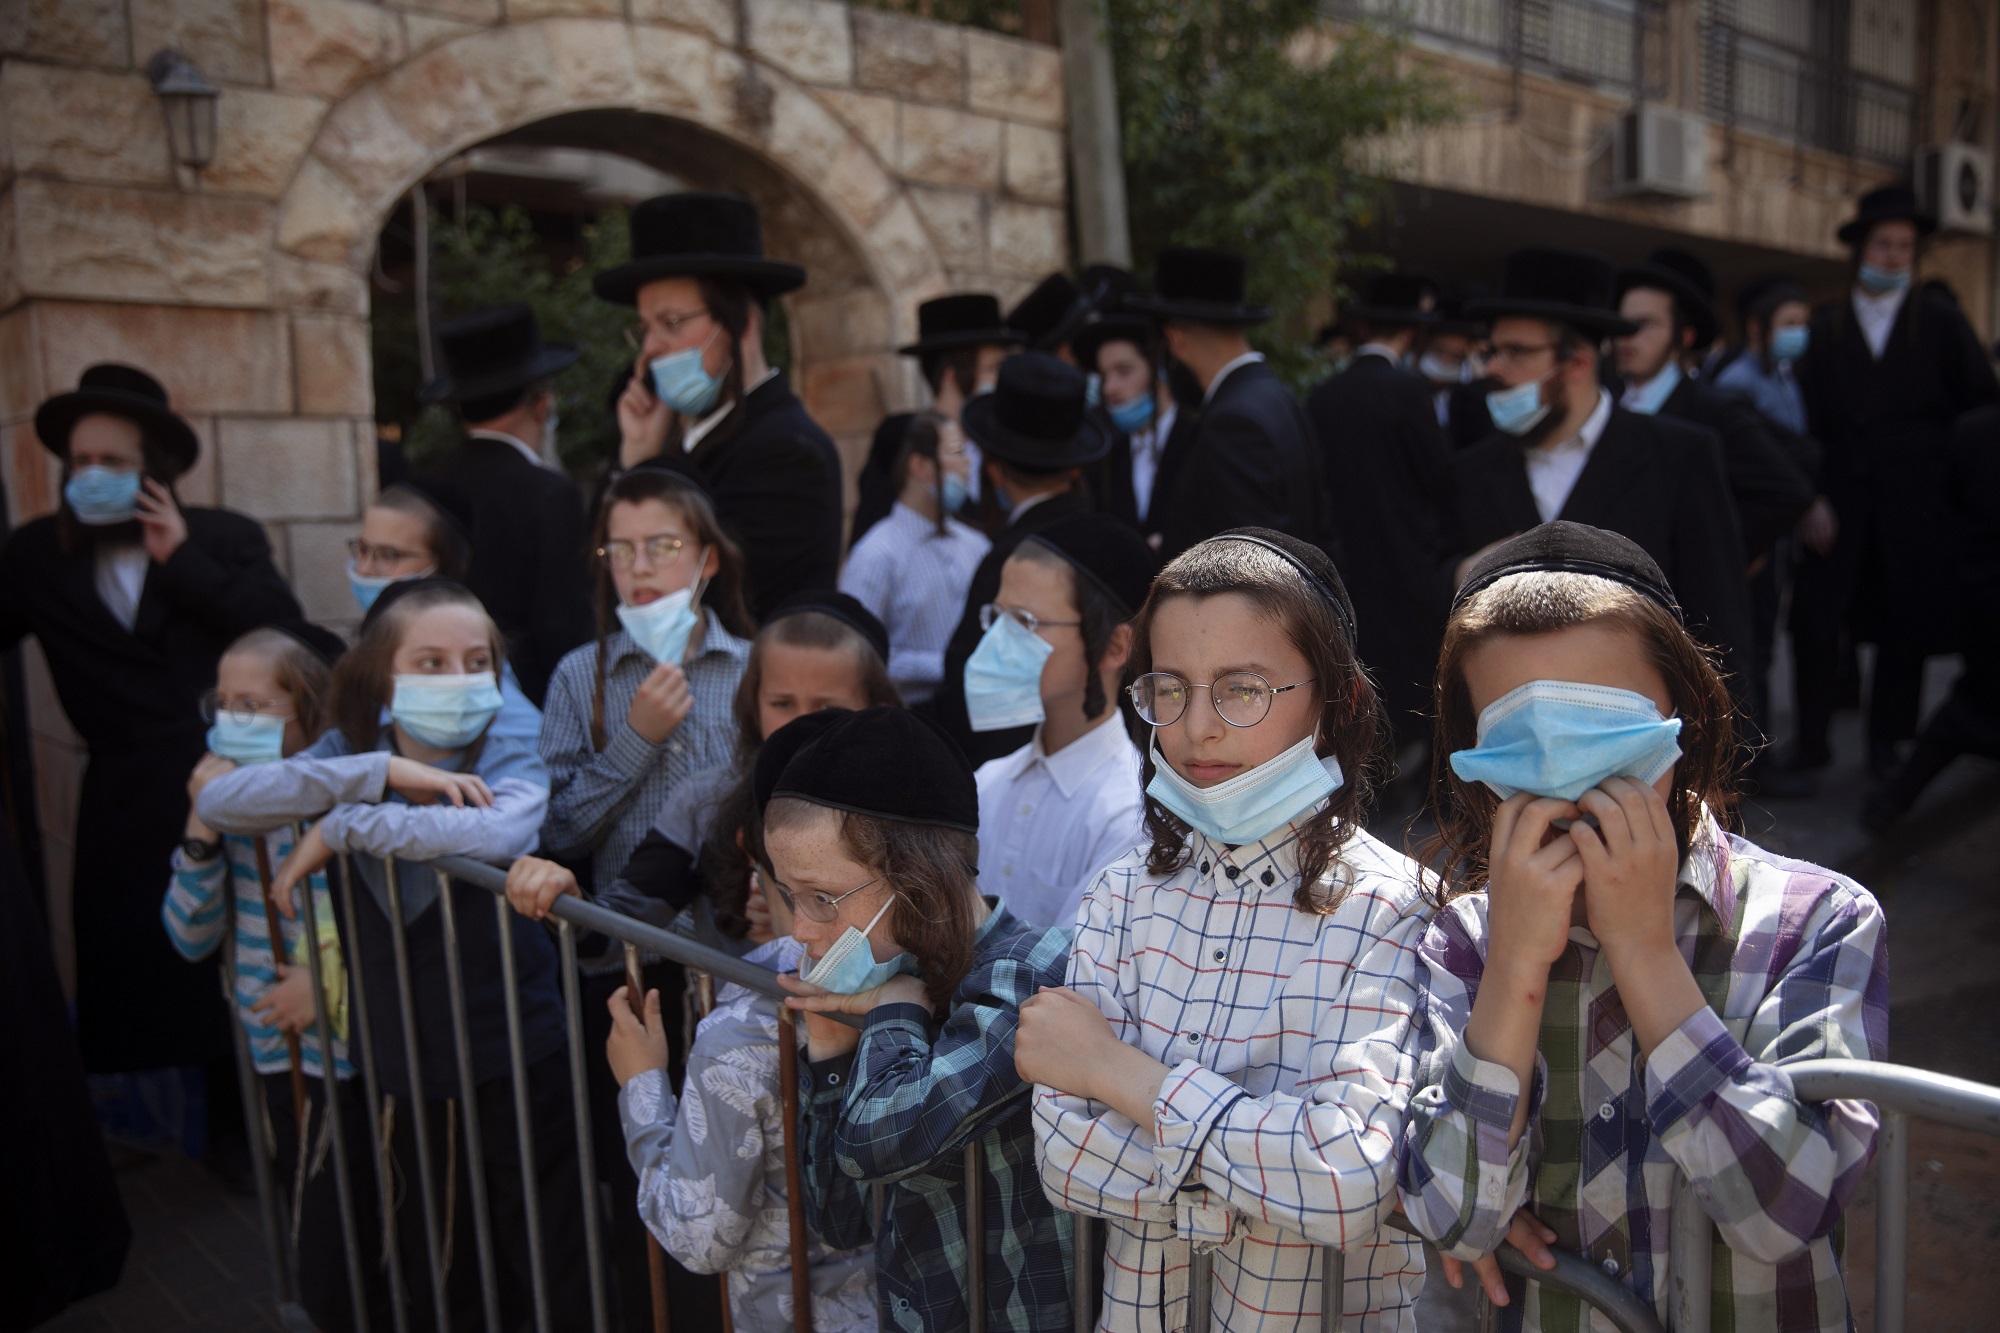 Οι μάσκες και τα μέτρα ήρθαν για να μείνουν! -Ισραήλ: Με 65% εμβολιασμένους επιβάλλουν εκ νέου την μασκοφορία